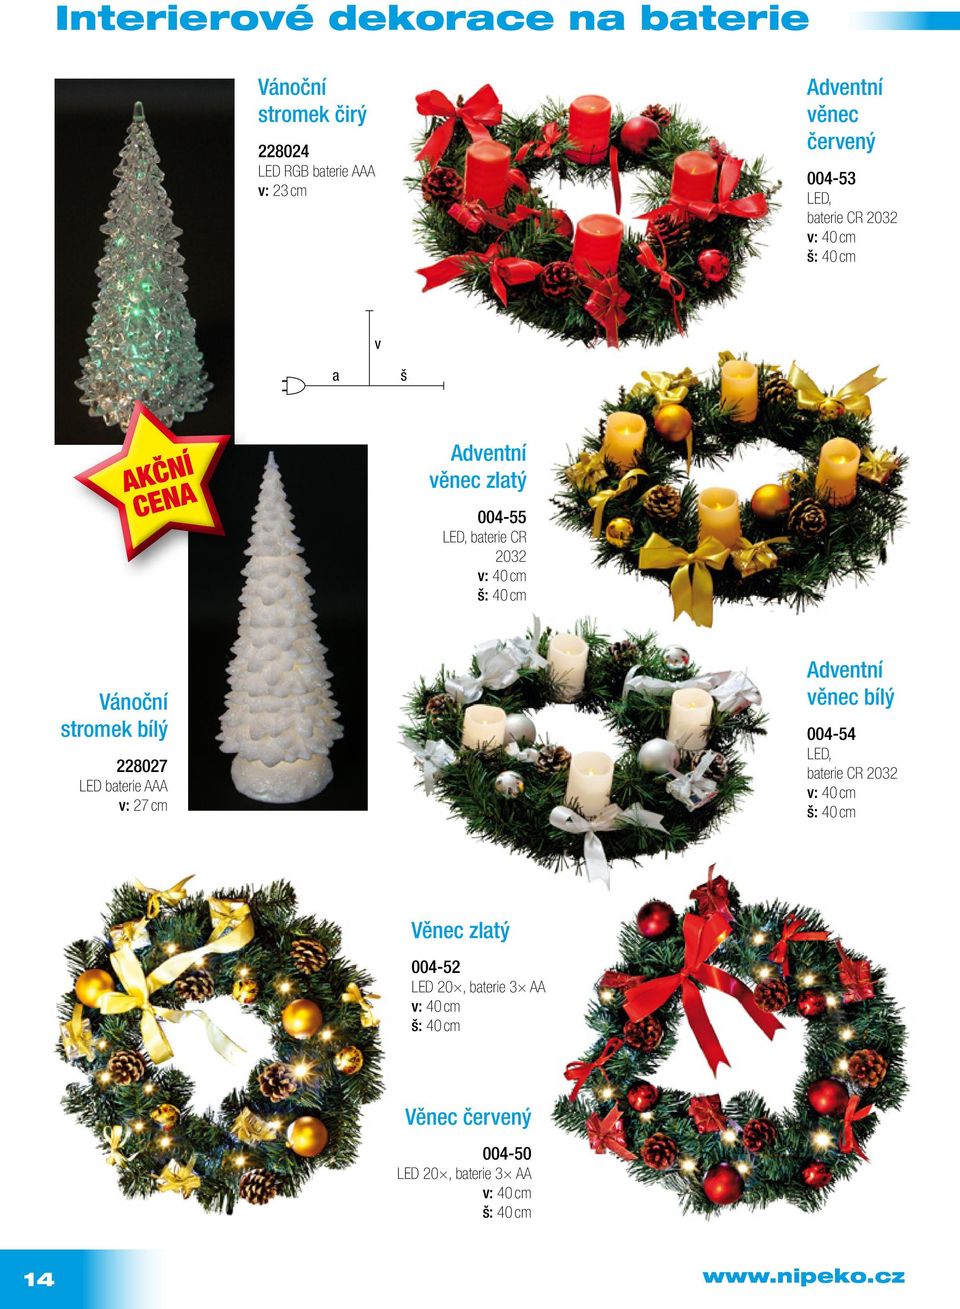 Vánoční stromek bílý 228027 LED bterie AAA : 27 cm Adentní ěnec bílý 004-54 LED, bterie CR 2032 : 40 cm :